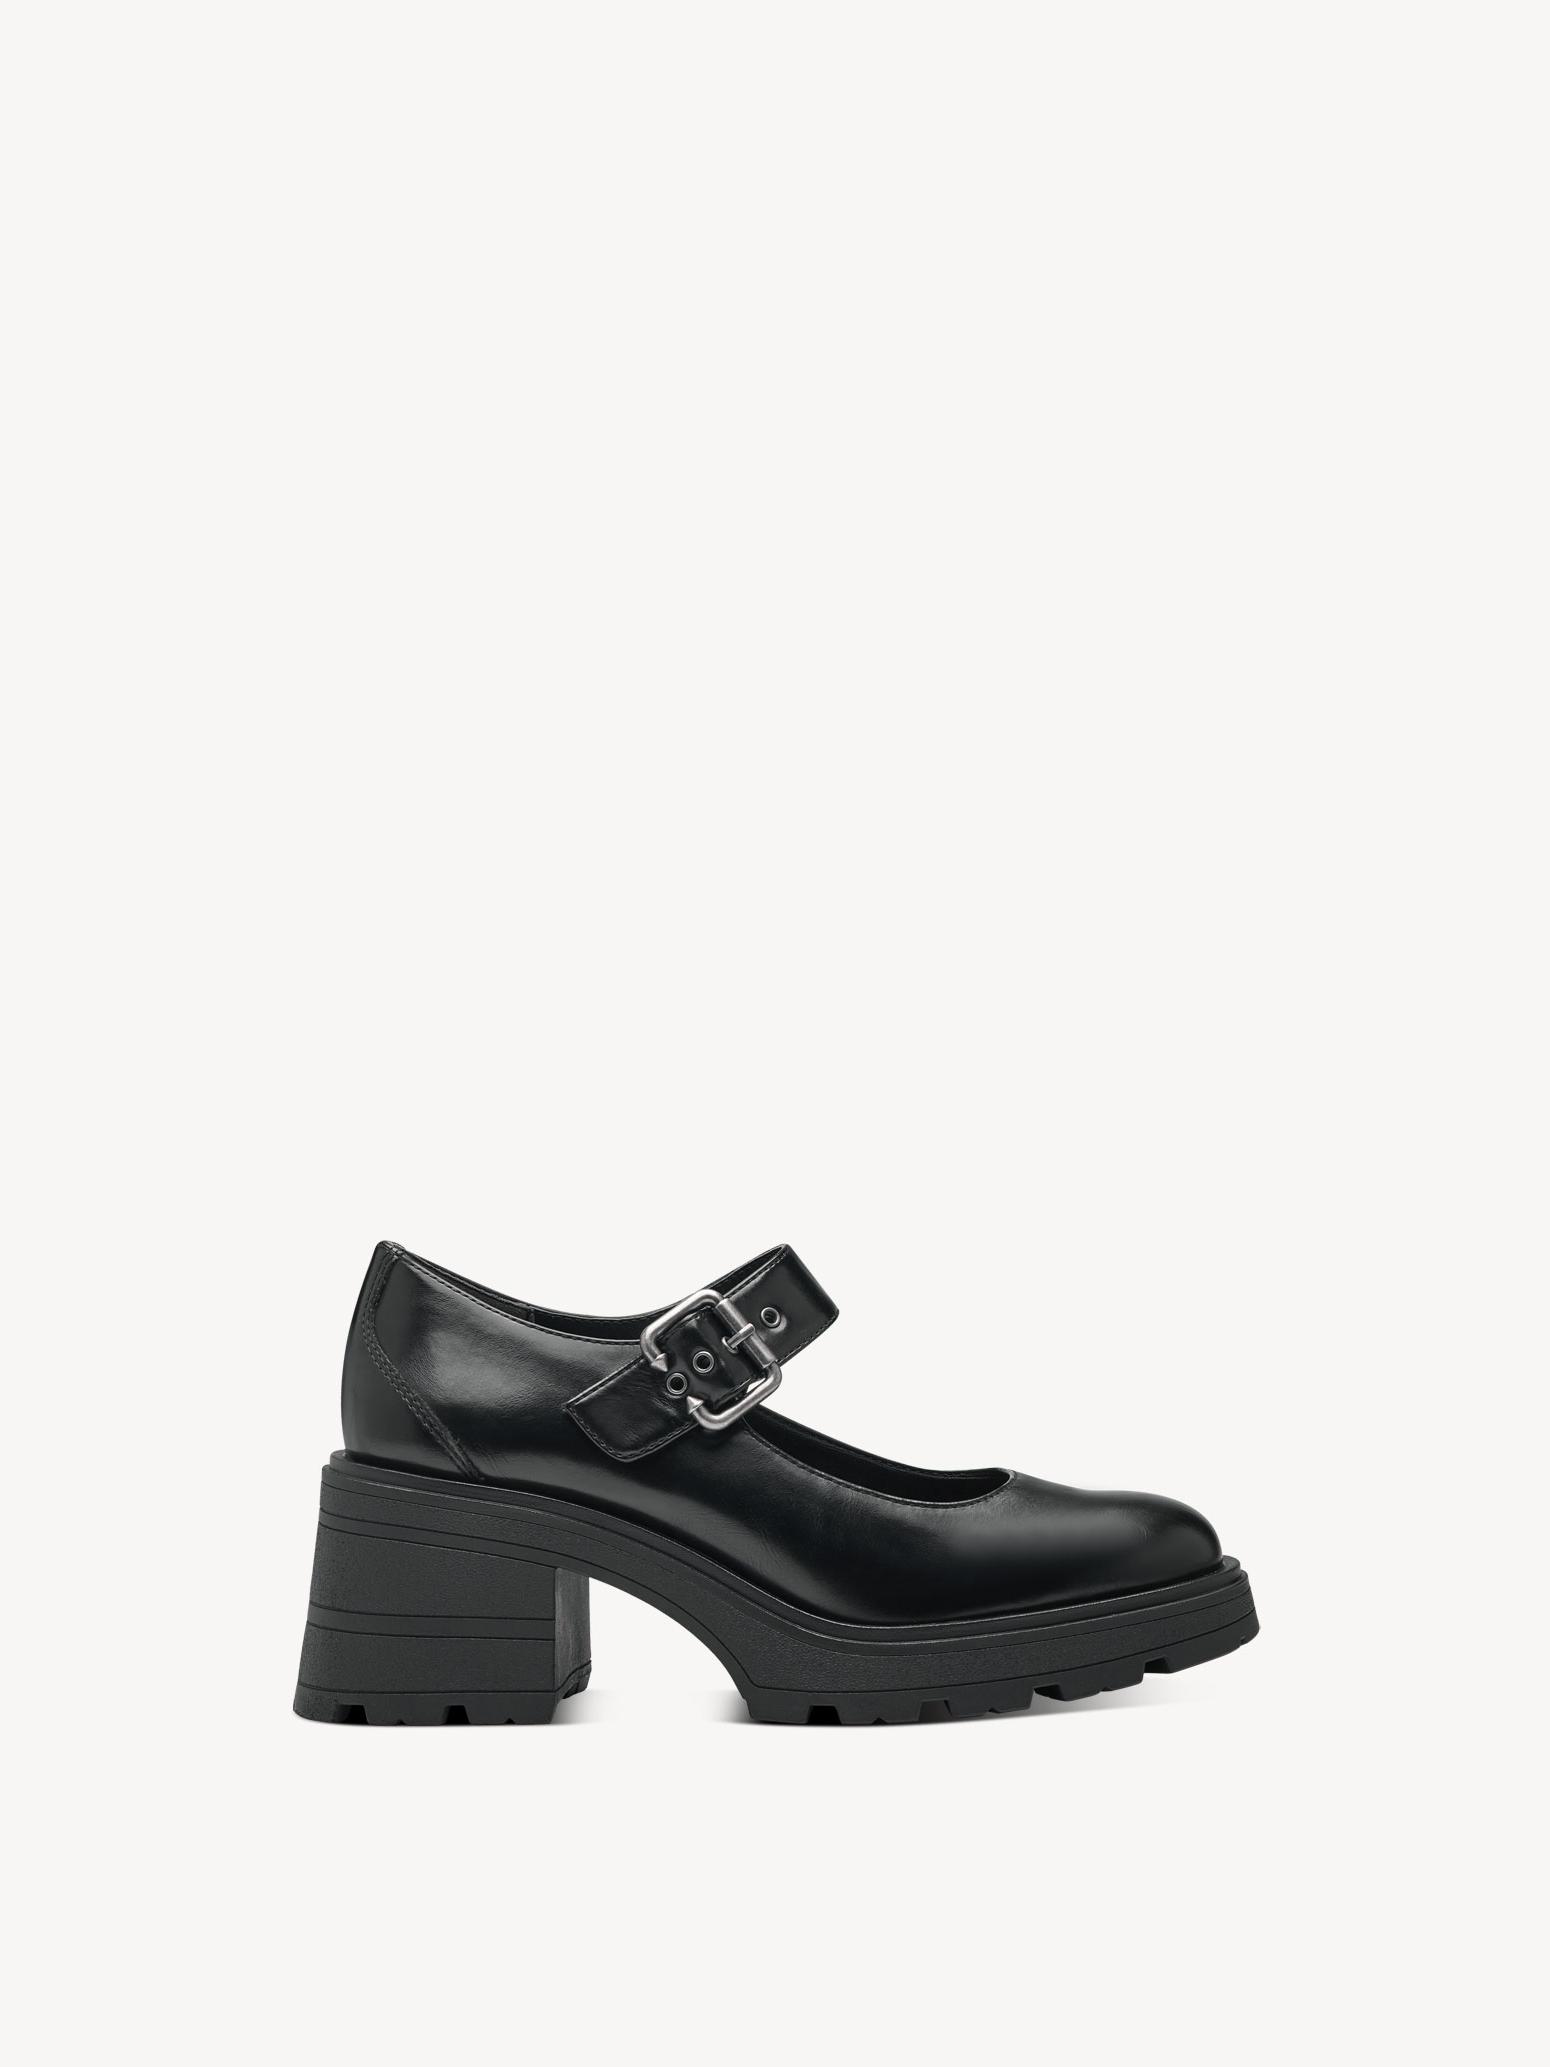 Туфли женские Tamaris 1-24430-41-001 черные 39 RU